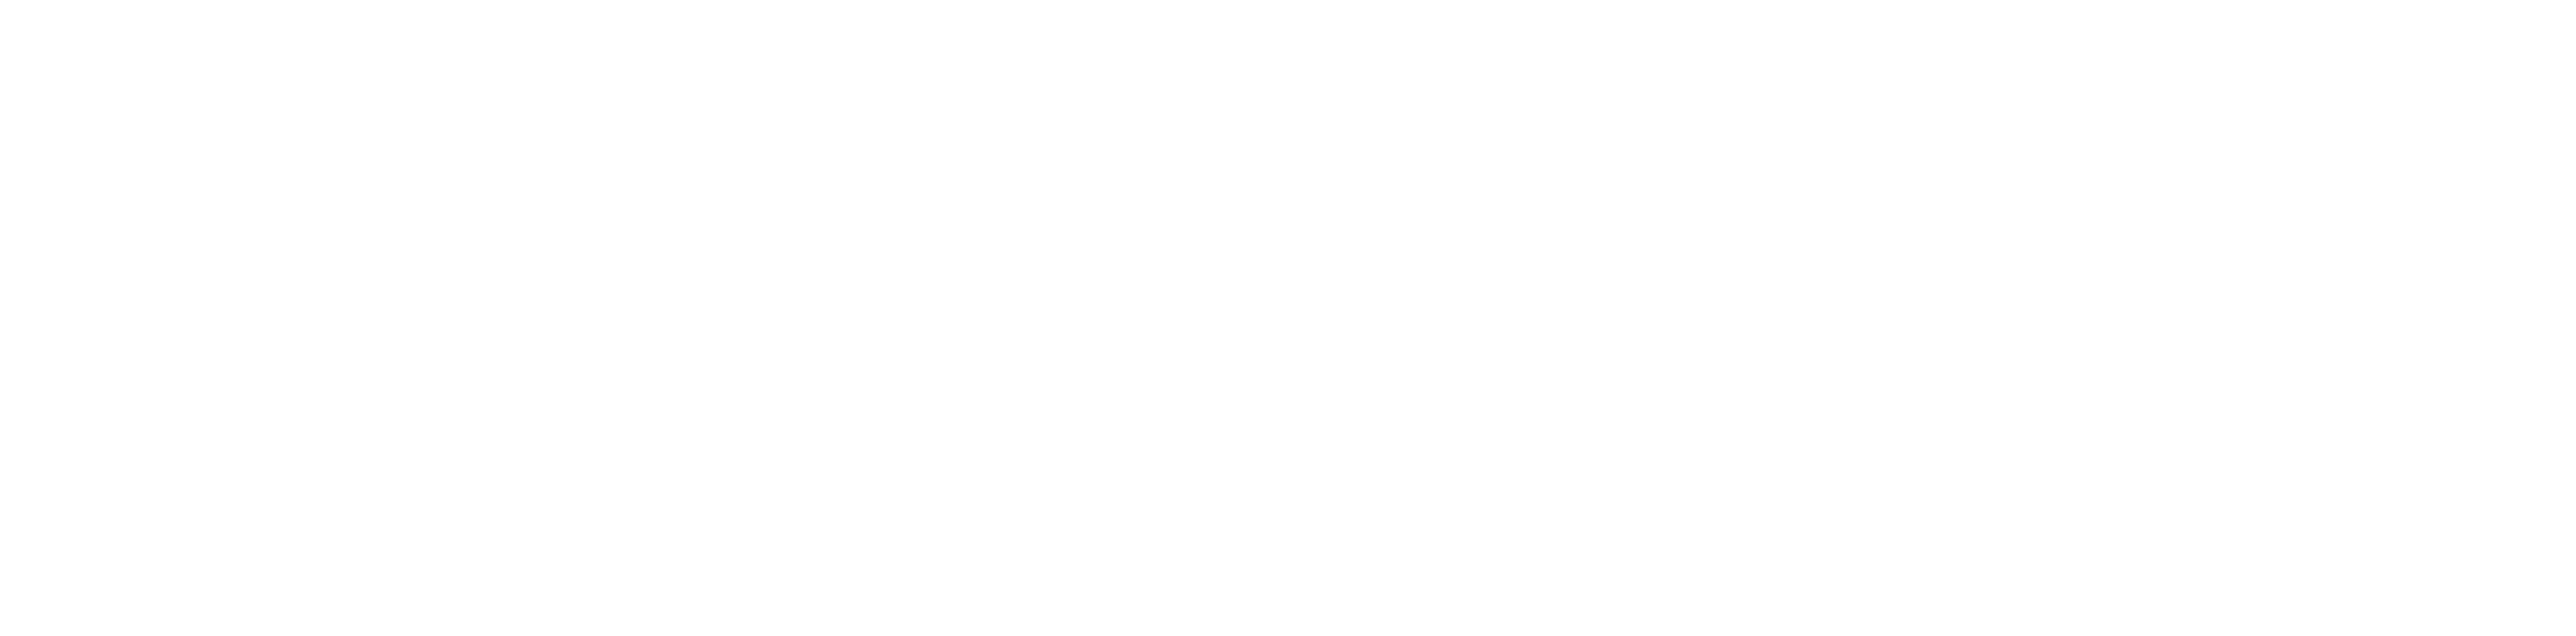 0_05 Un color invertido horizontal Centro de Emprendimiento Kirzner